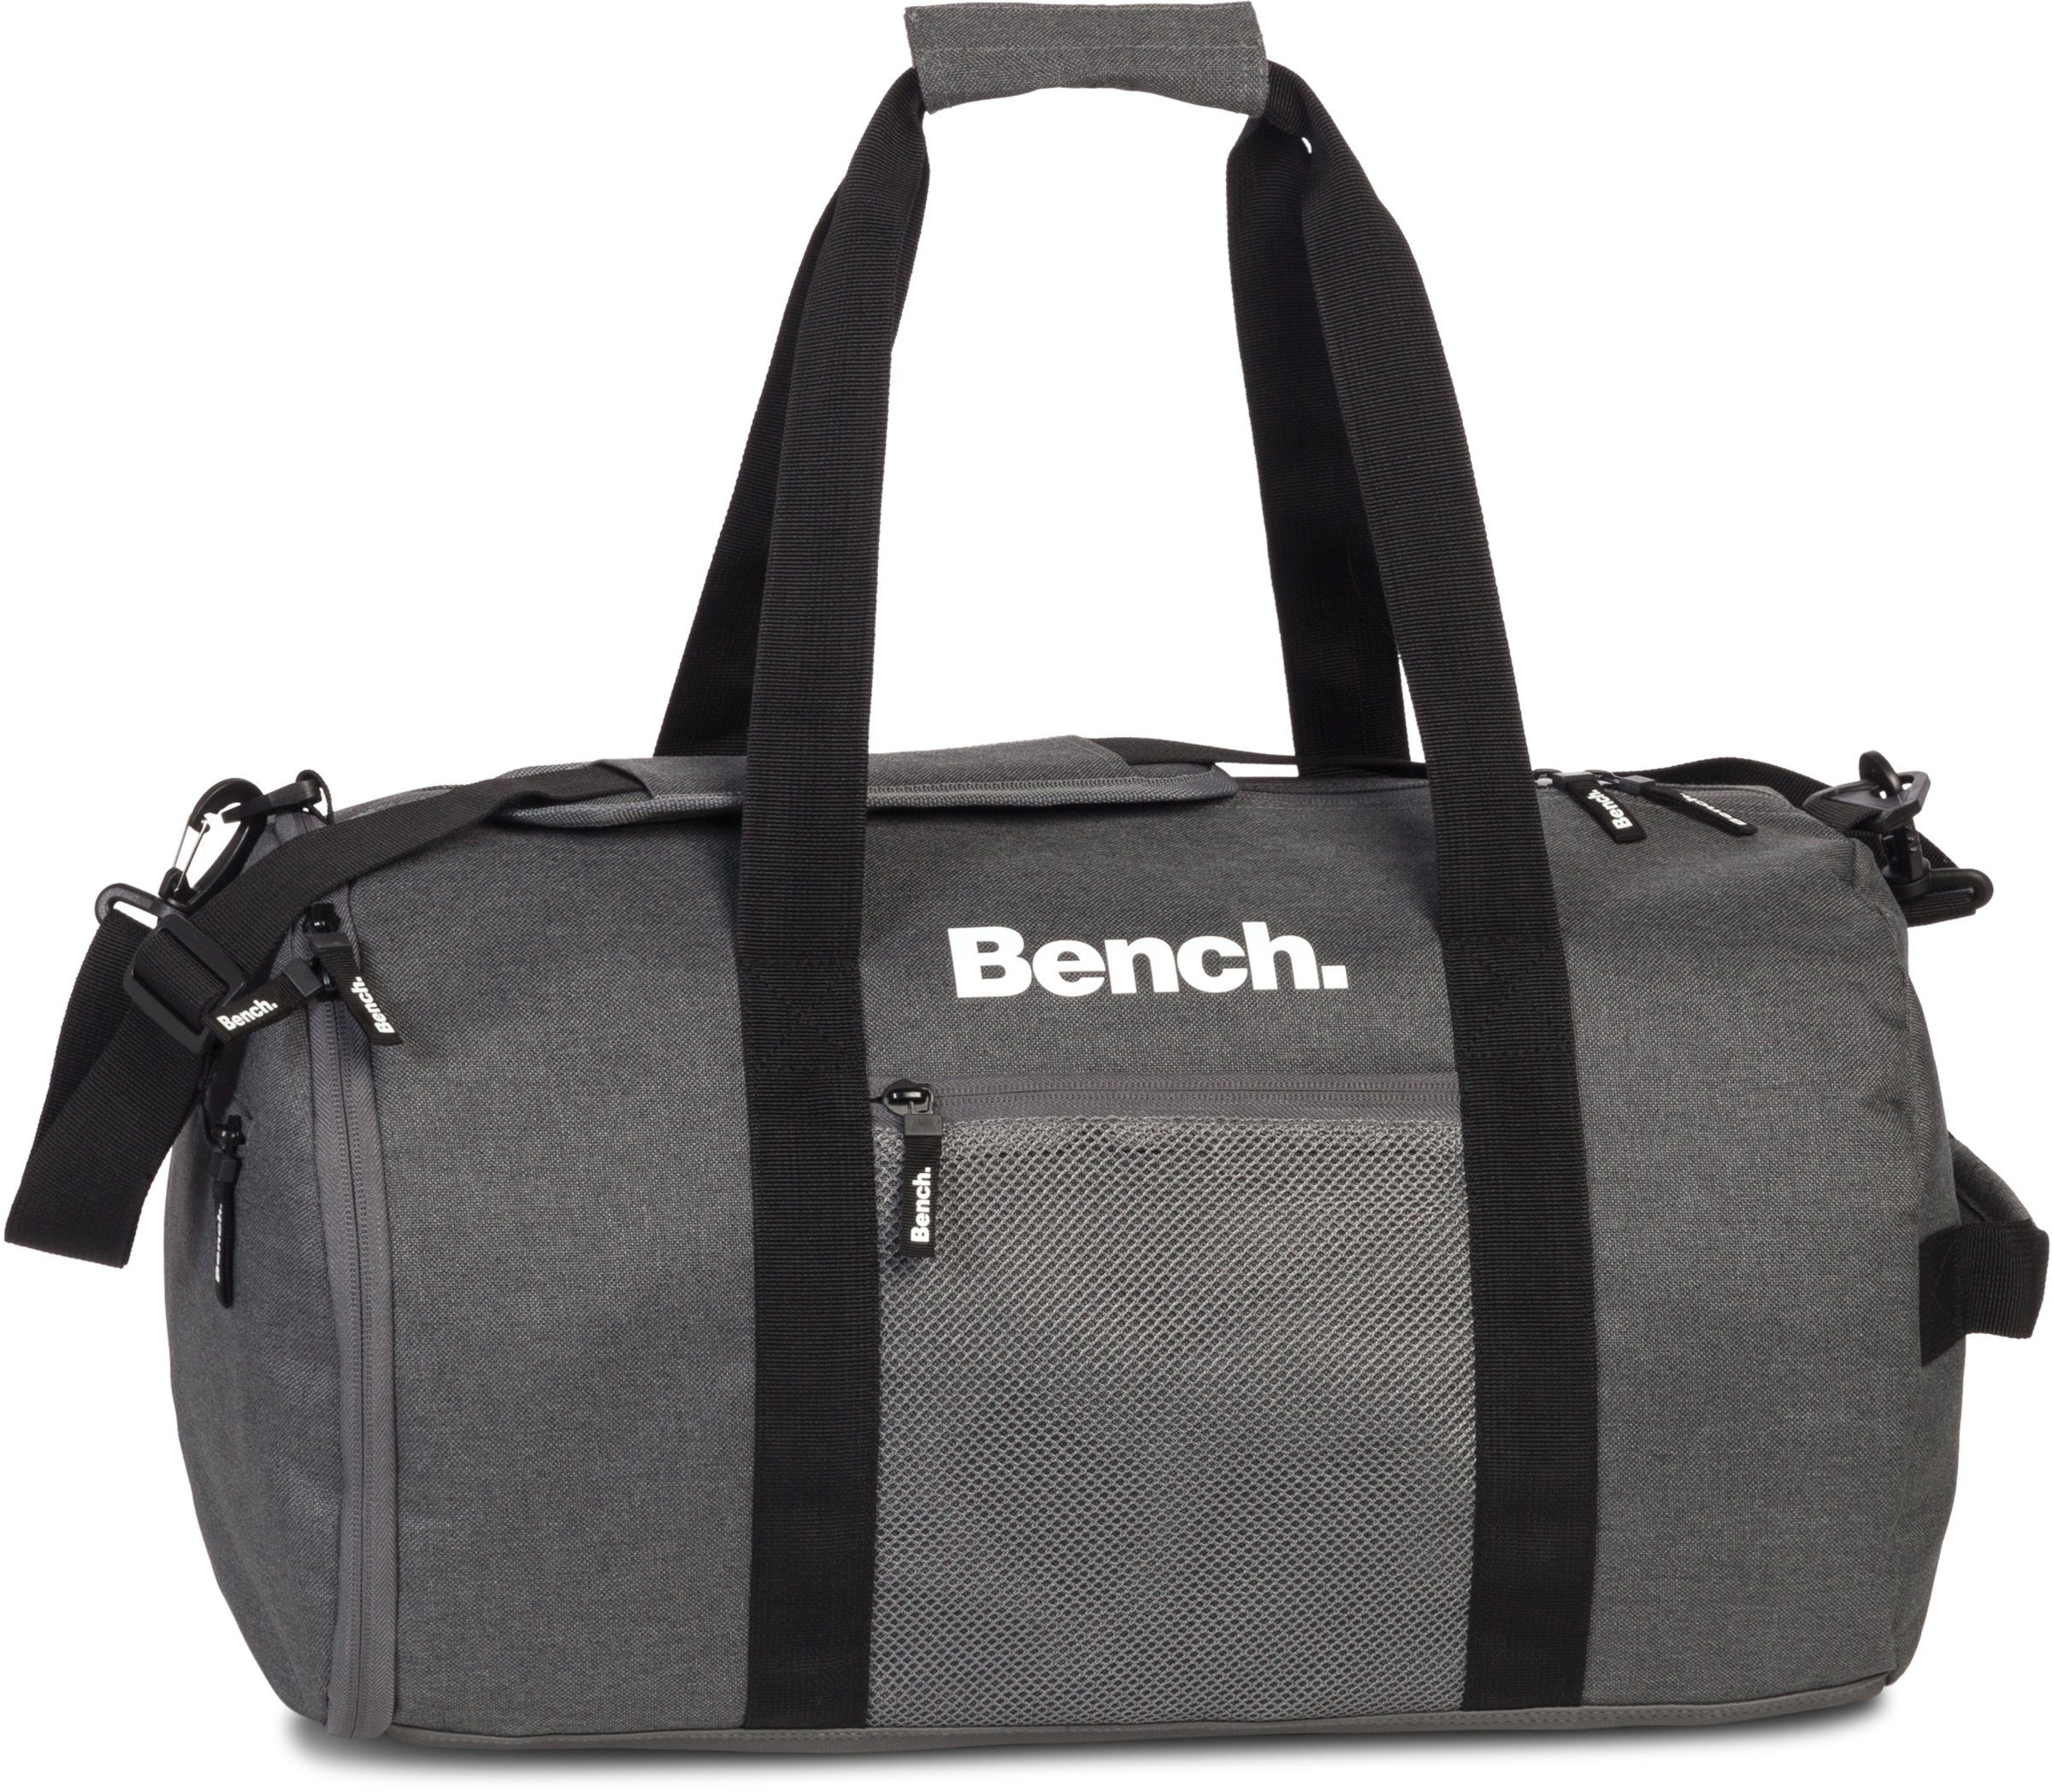 Bench. Reisetasche Sporttasche, 30 L dunkelgrau